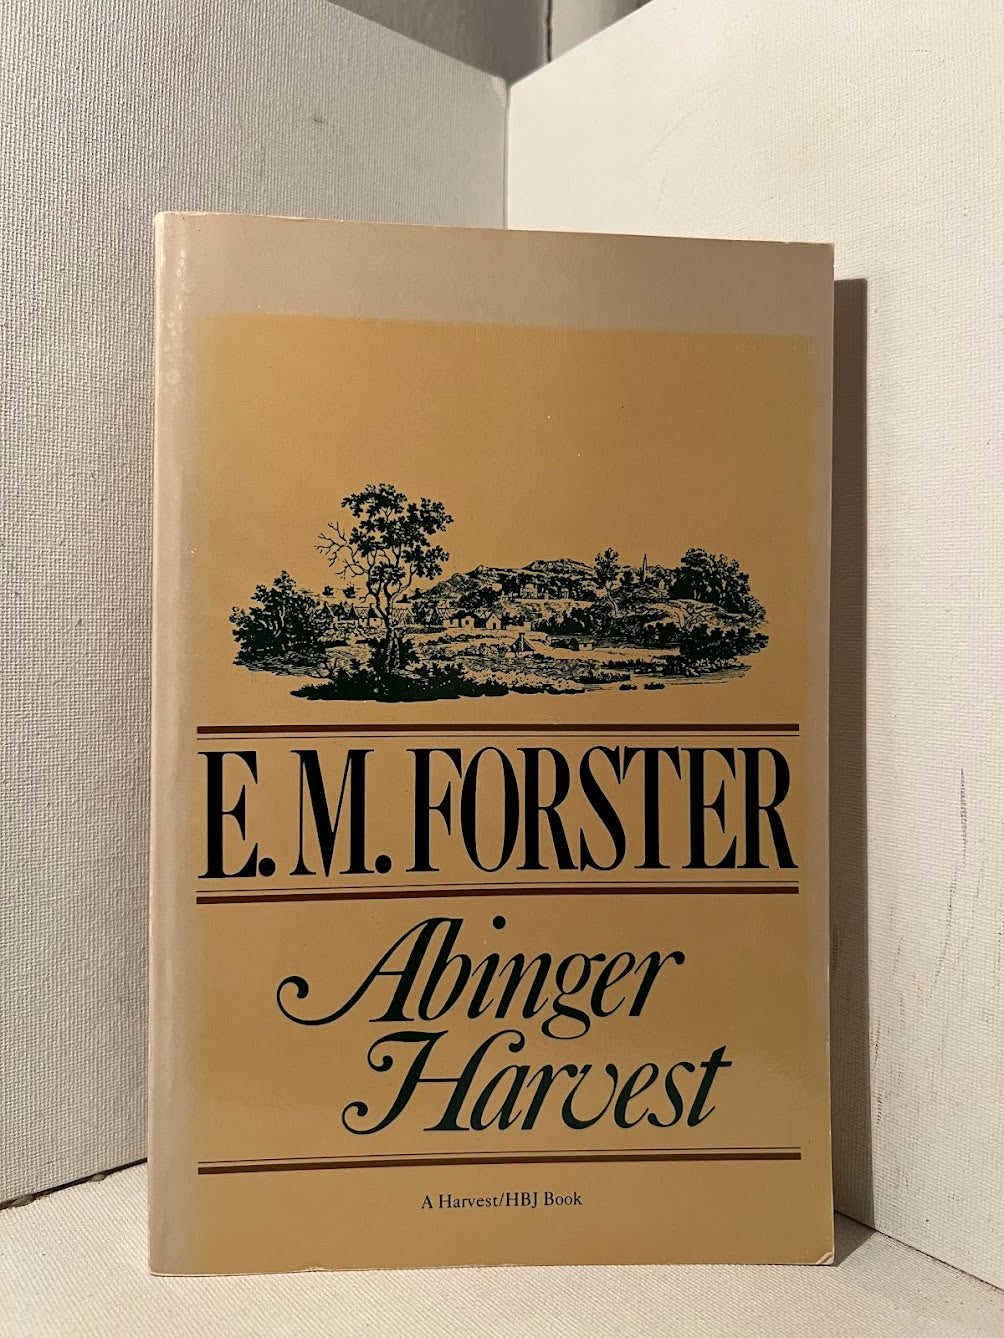 Abinger Harvest by E.M. Forster